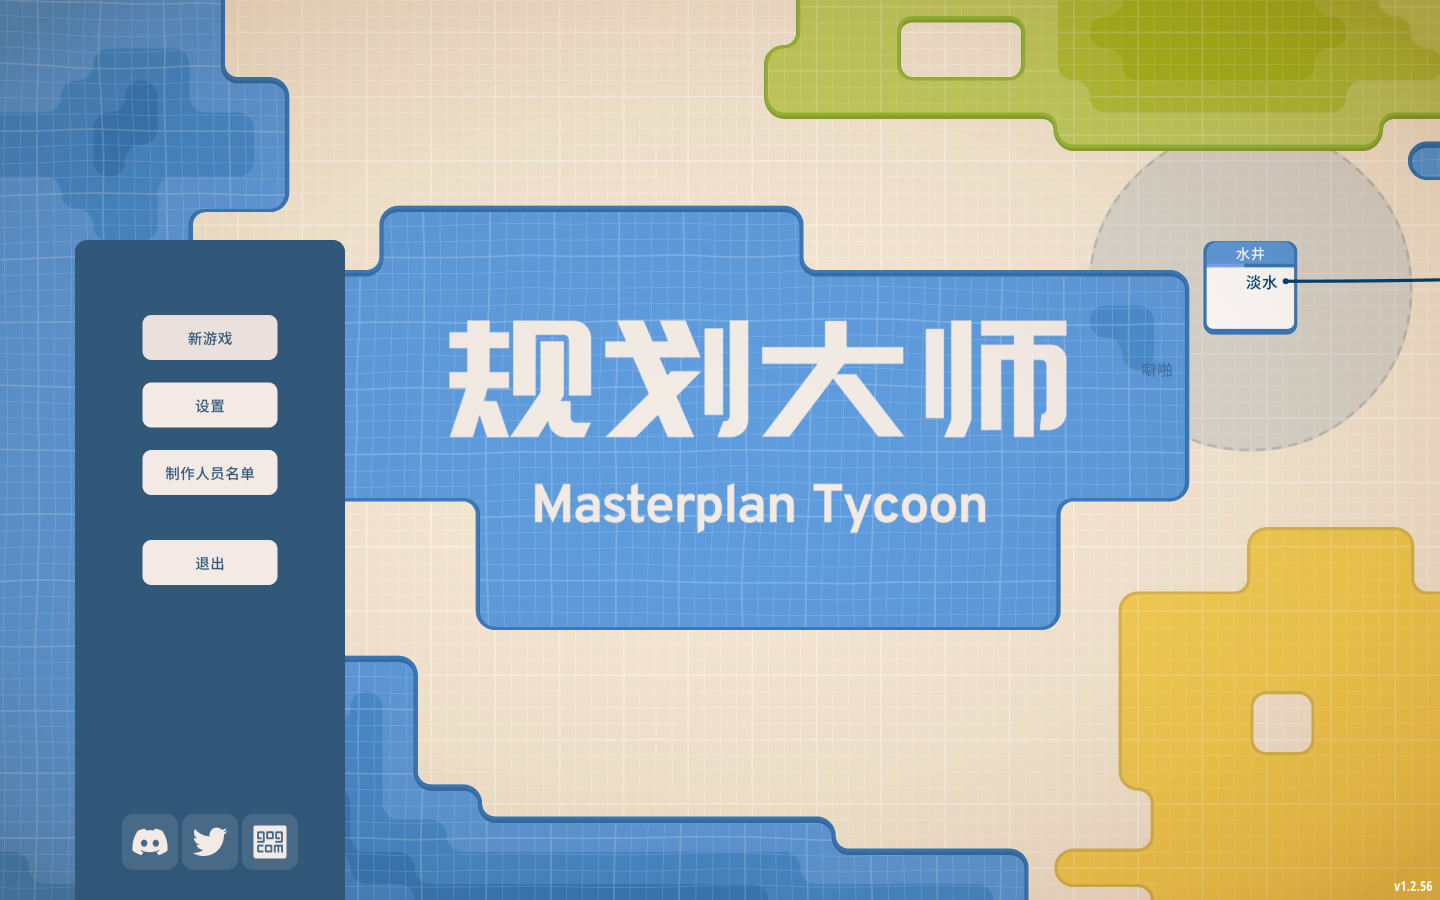 规划大师 for Mac Masterplan Tycoon v1.4.178 中文原生版 苹果电脑